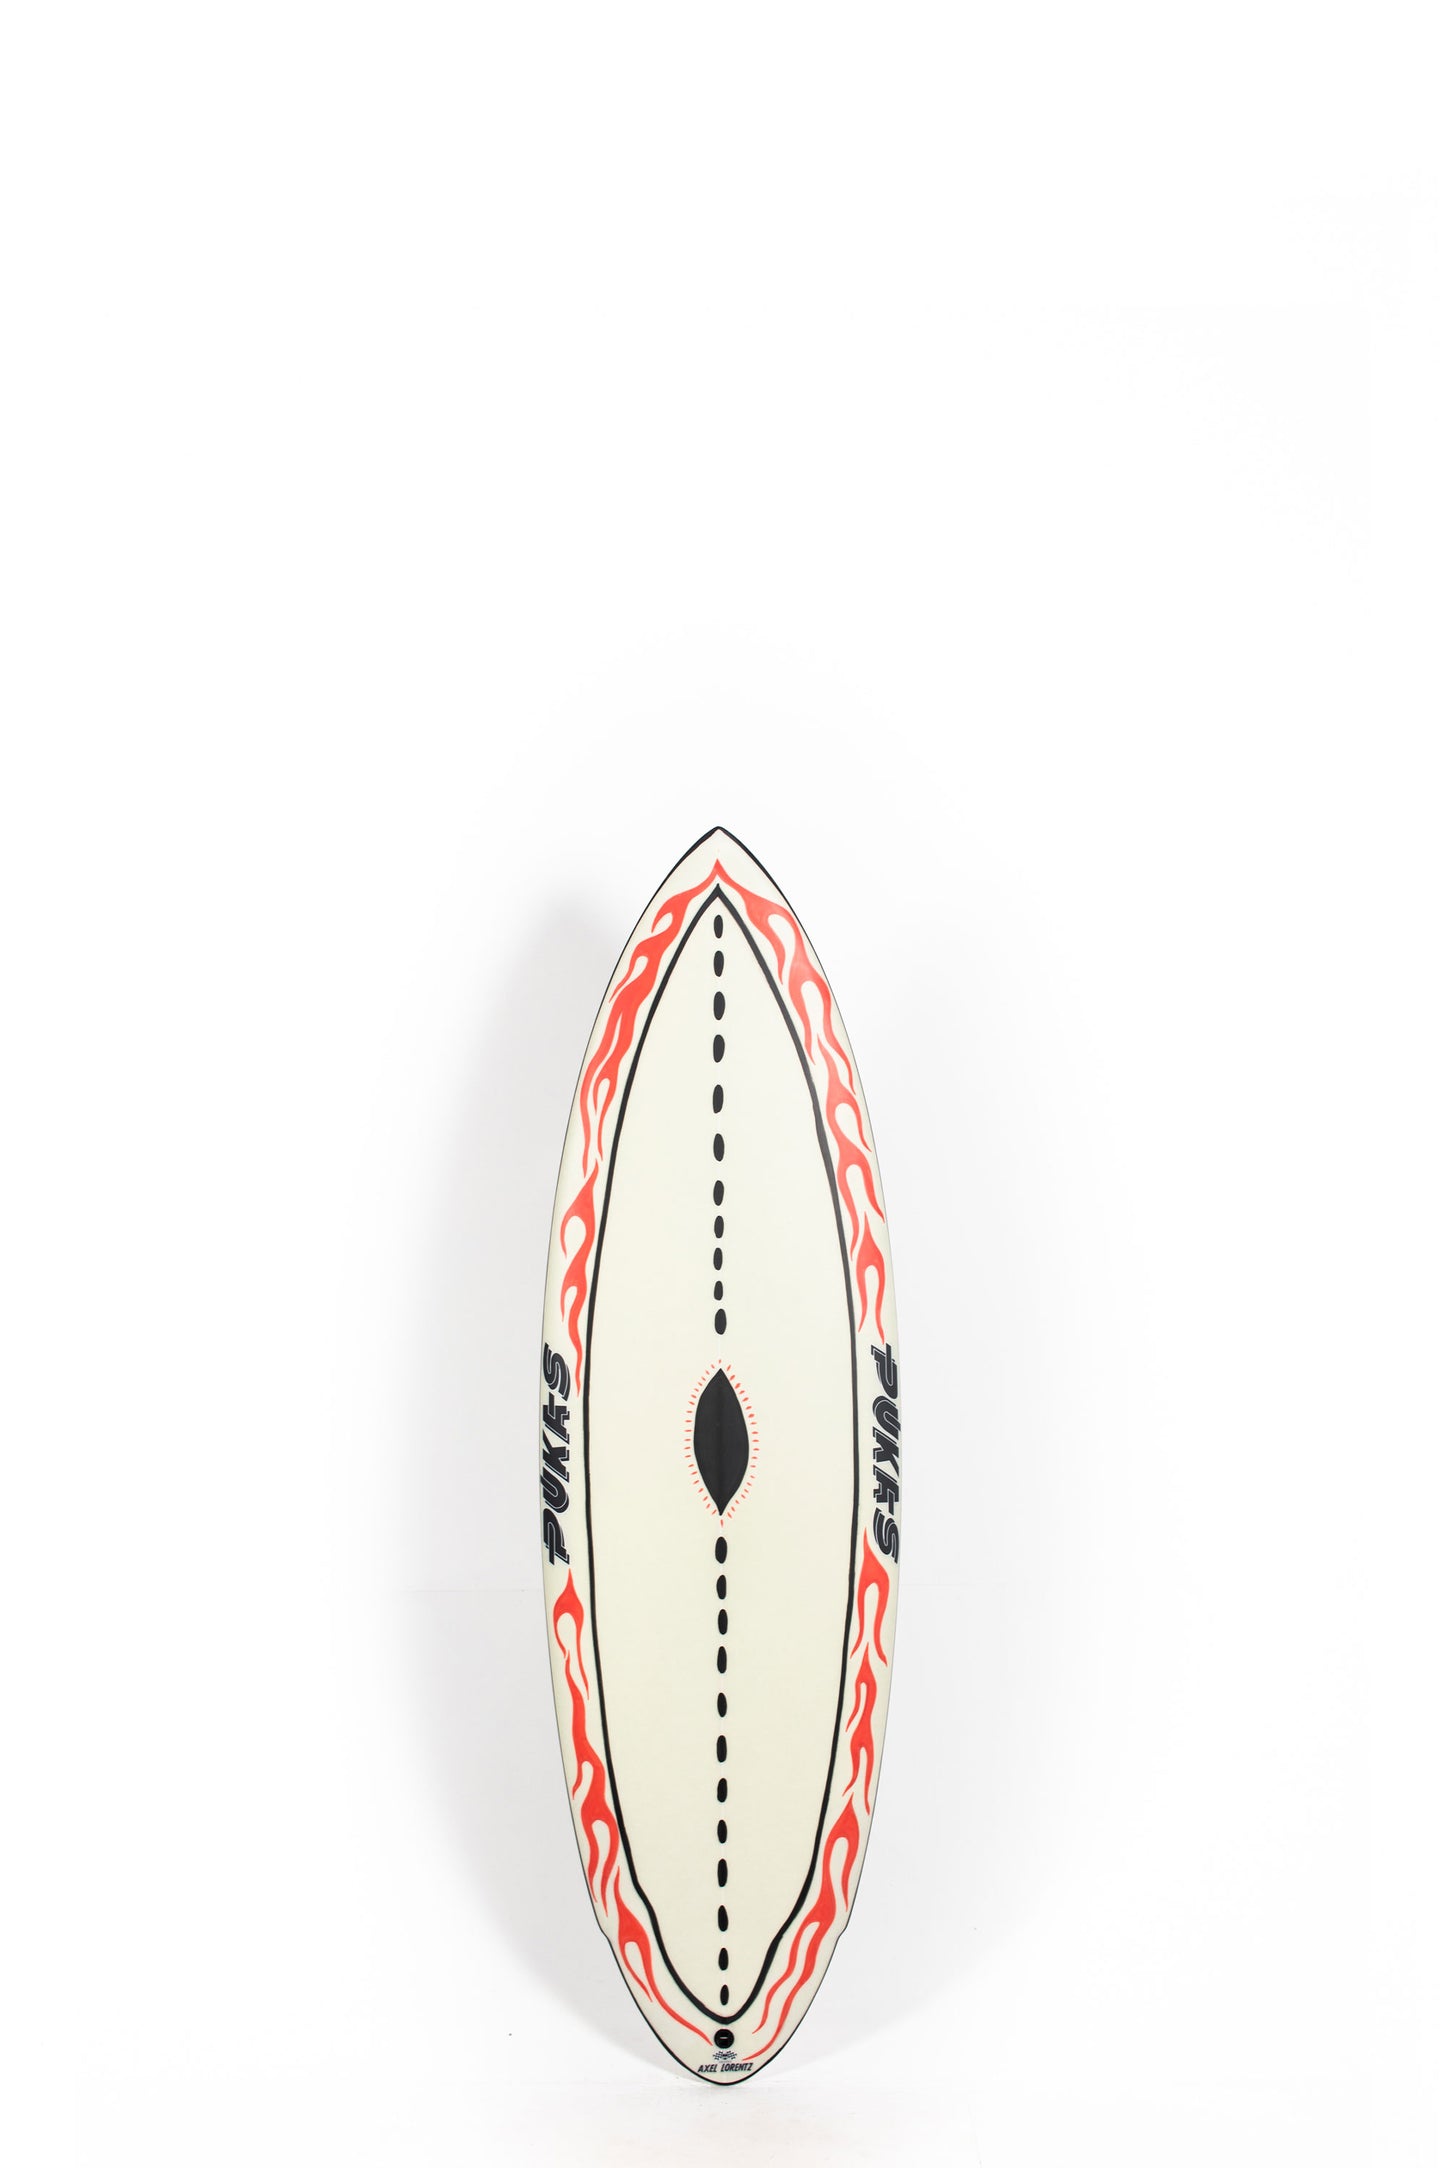 Pukas surf Shop - Copia de Pukas Surfboards - ACID PLAN by Axel Lorentz - 5'6" x 19,25 x 2,33 x 27,05L - AX08419